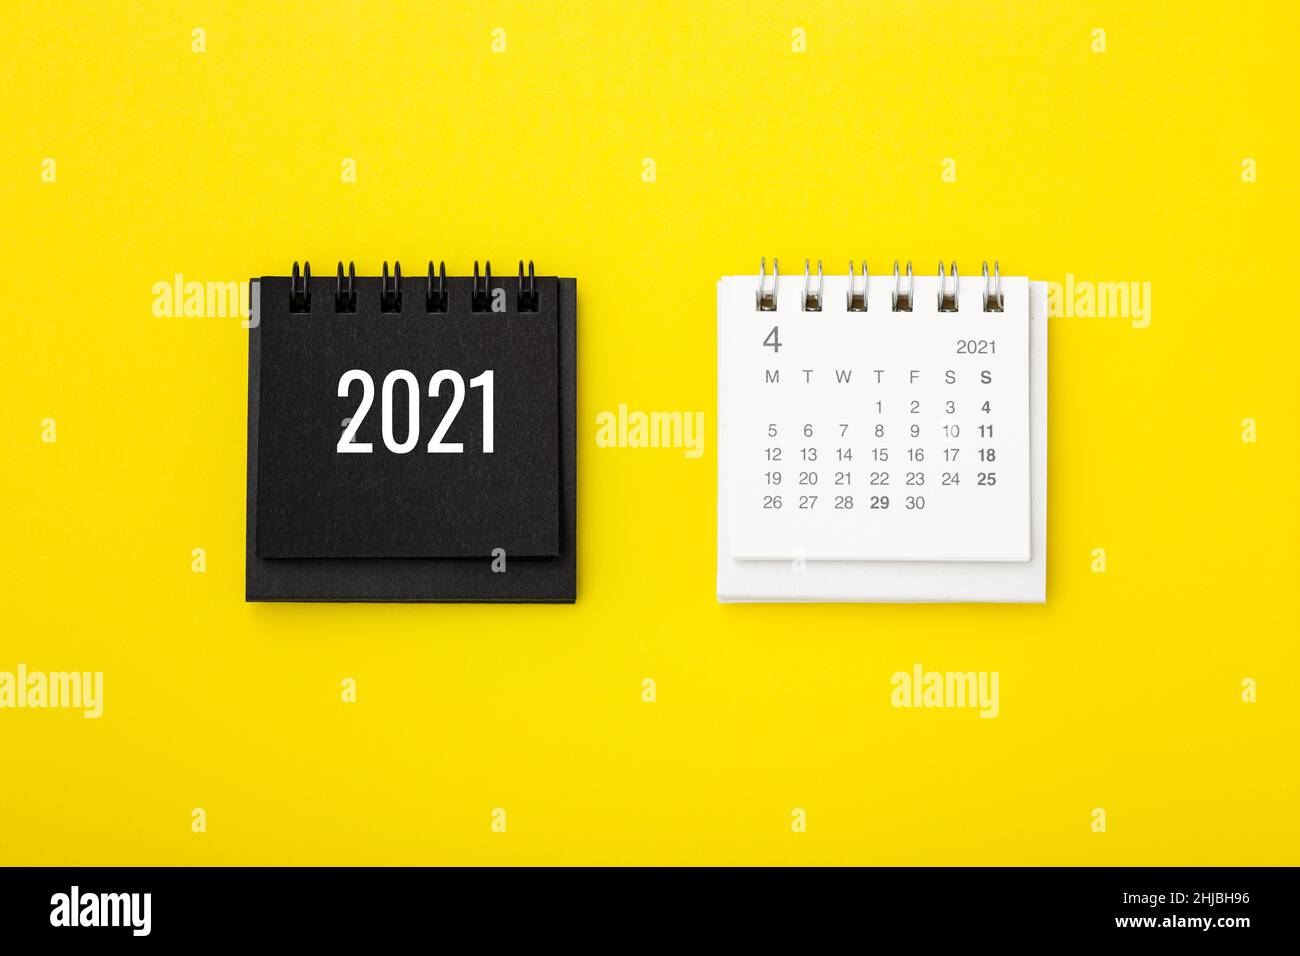 Calendario 2021 sobre fondo amarillo, vista superior Foto de stock